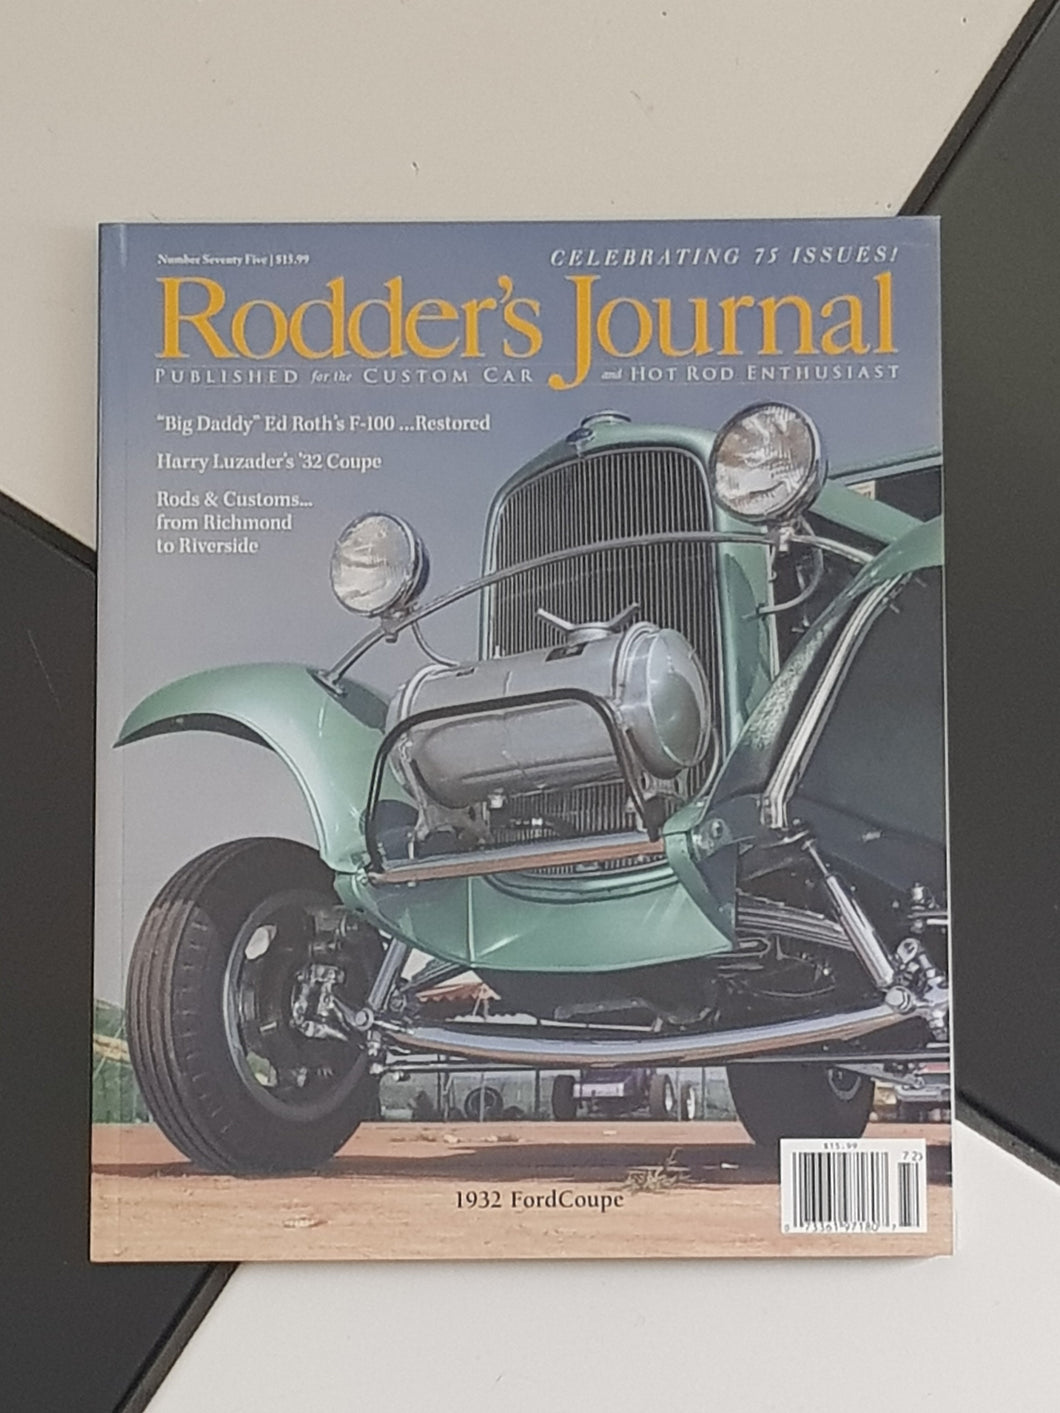 The Rodder's Journal - 75